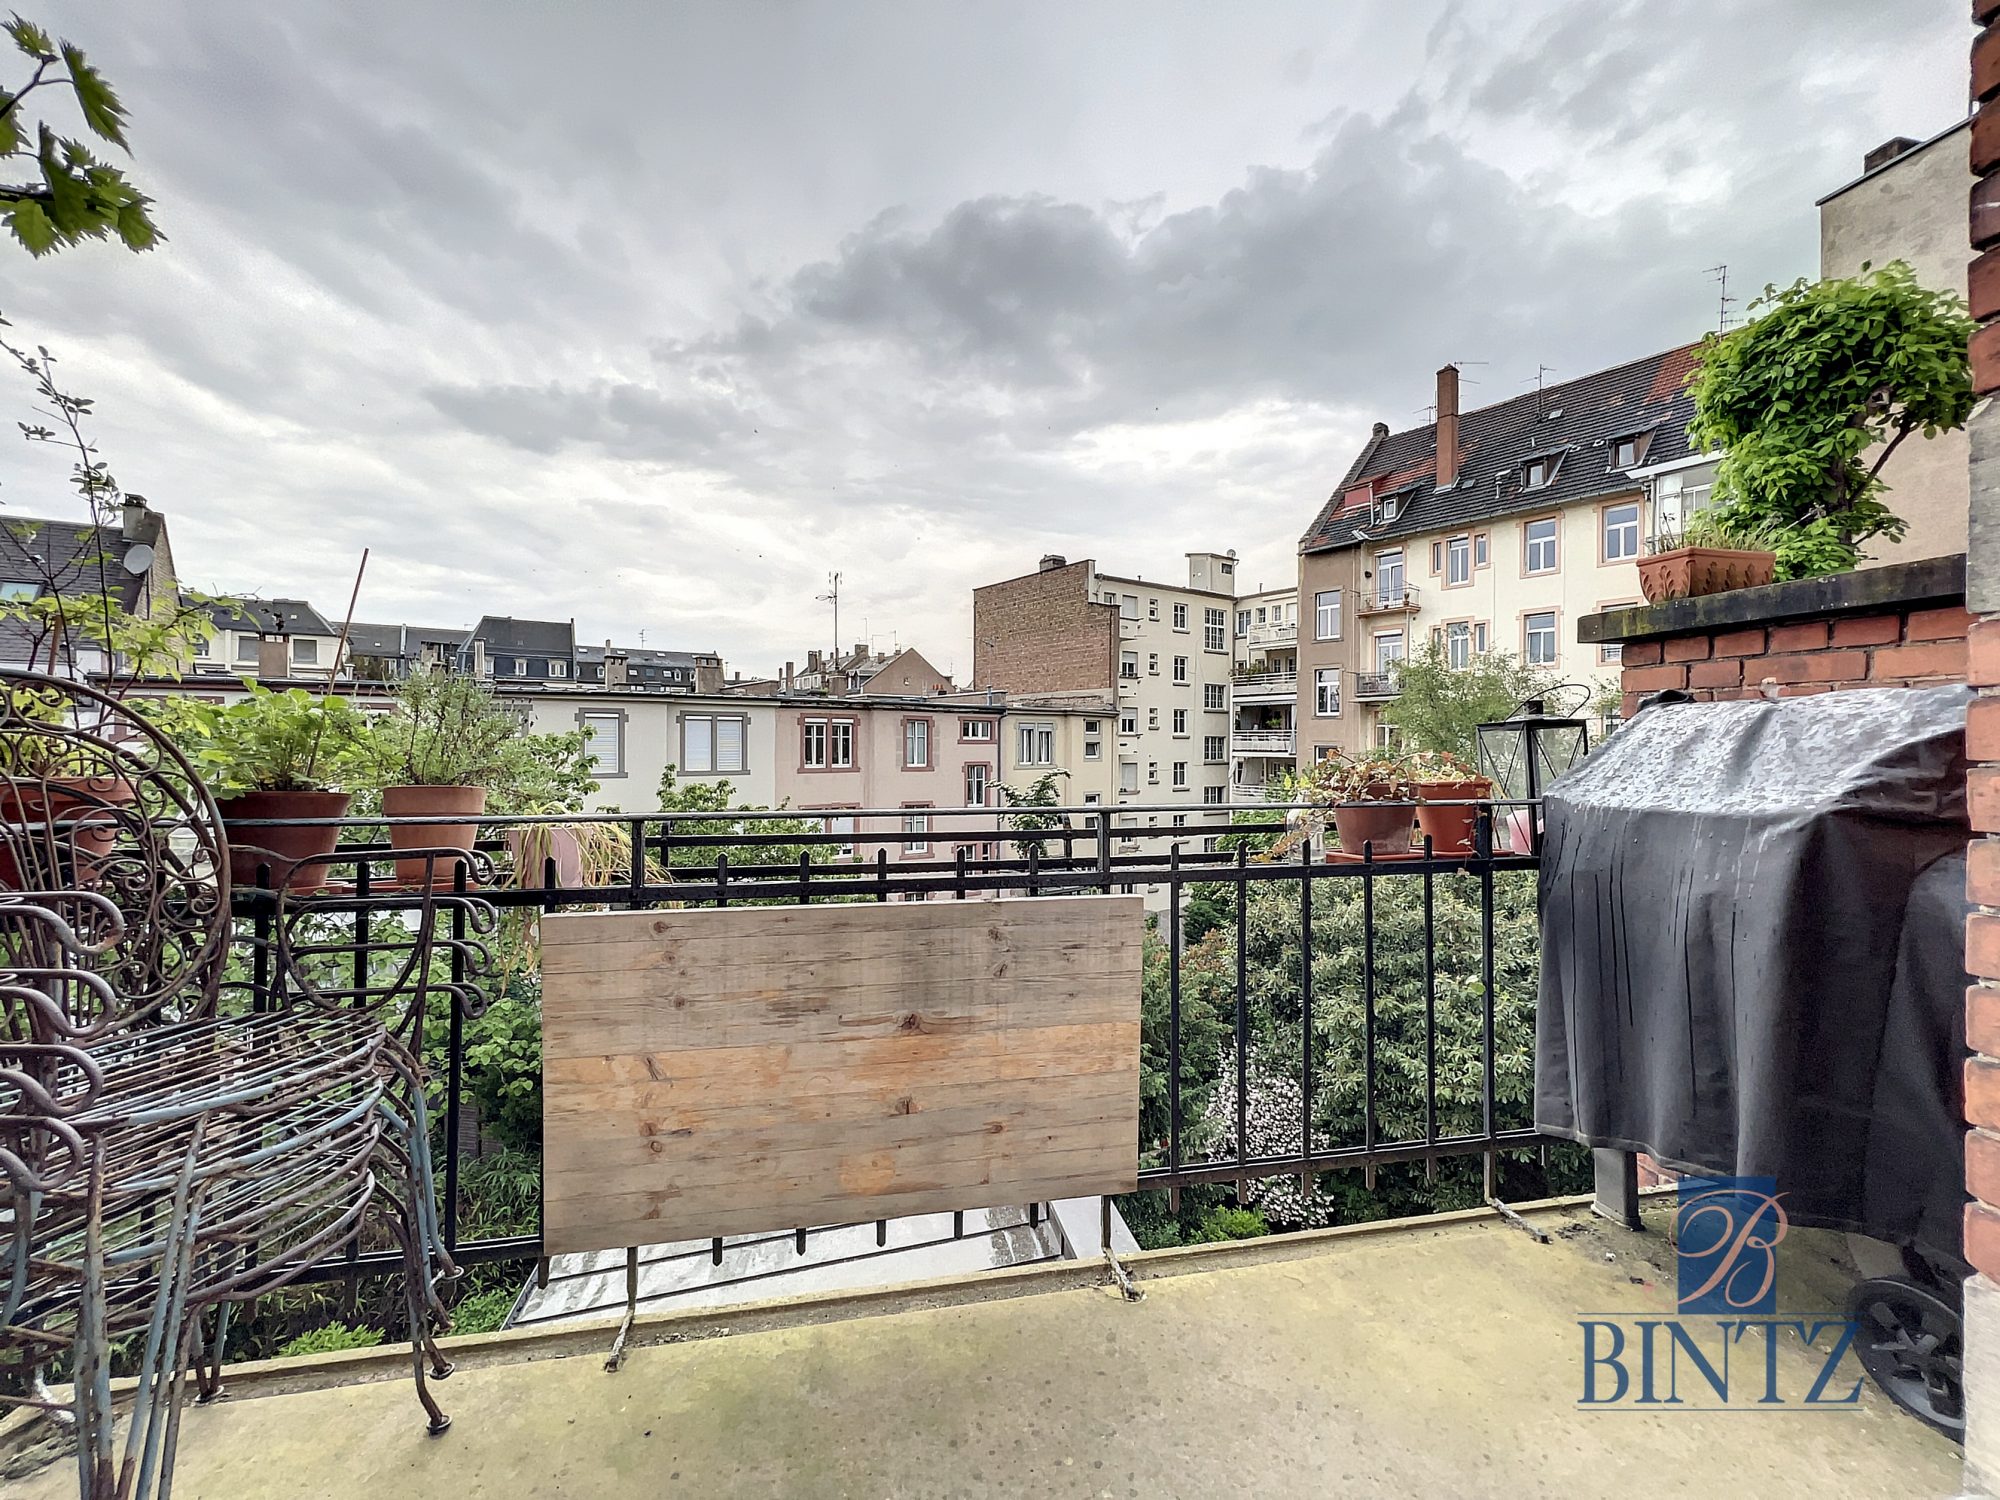 6P ORANGERIE - location appartement Strasbourg - Bintz Immobilier - 7